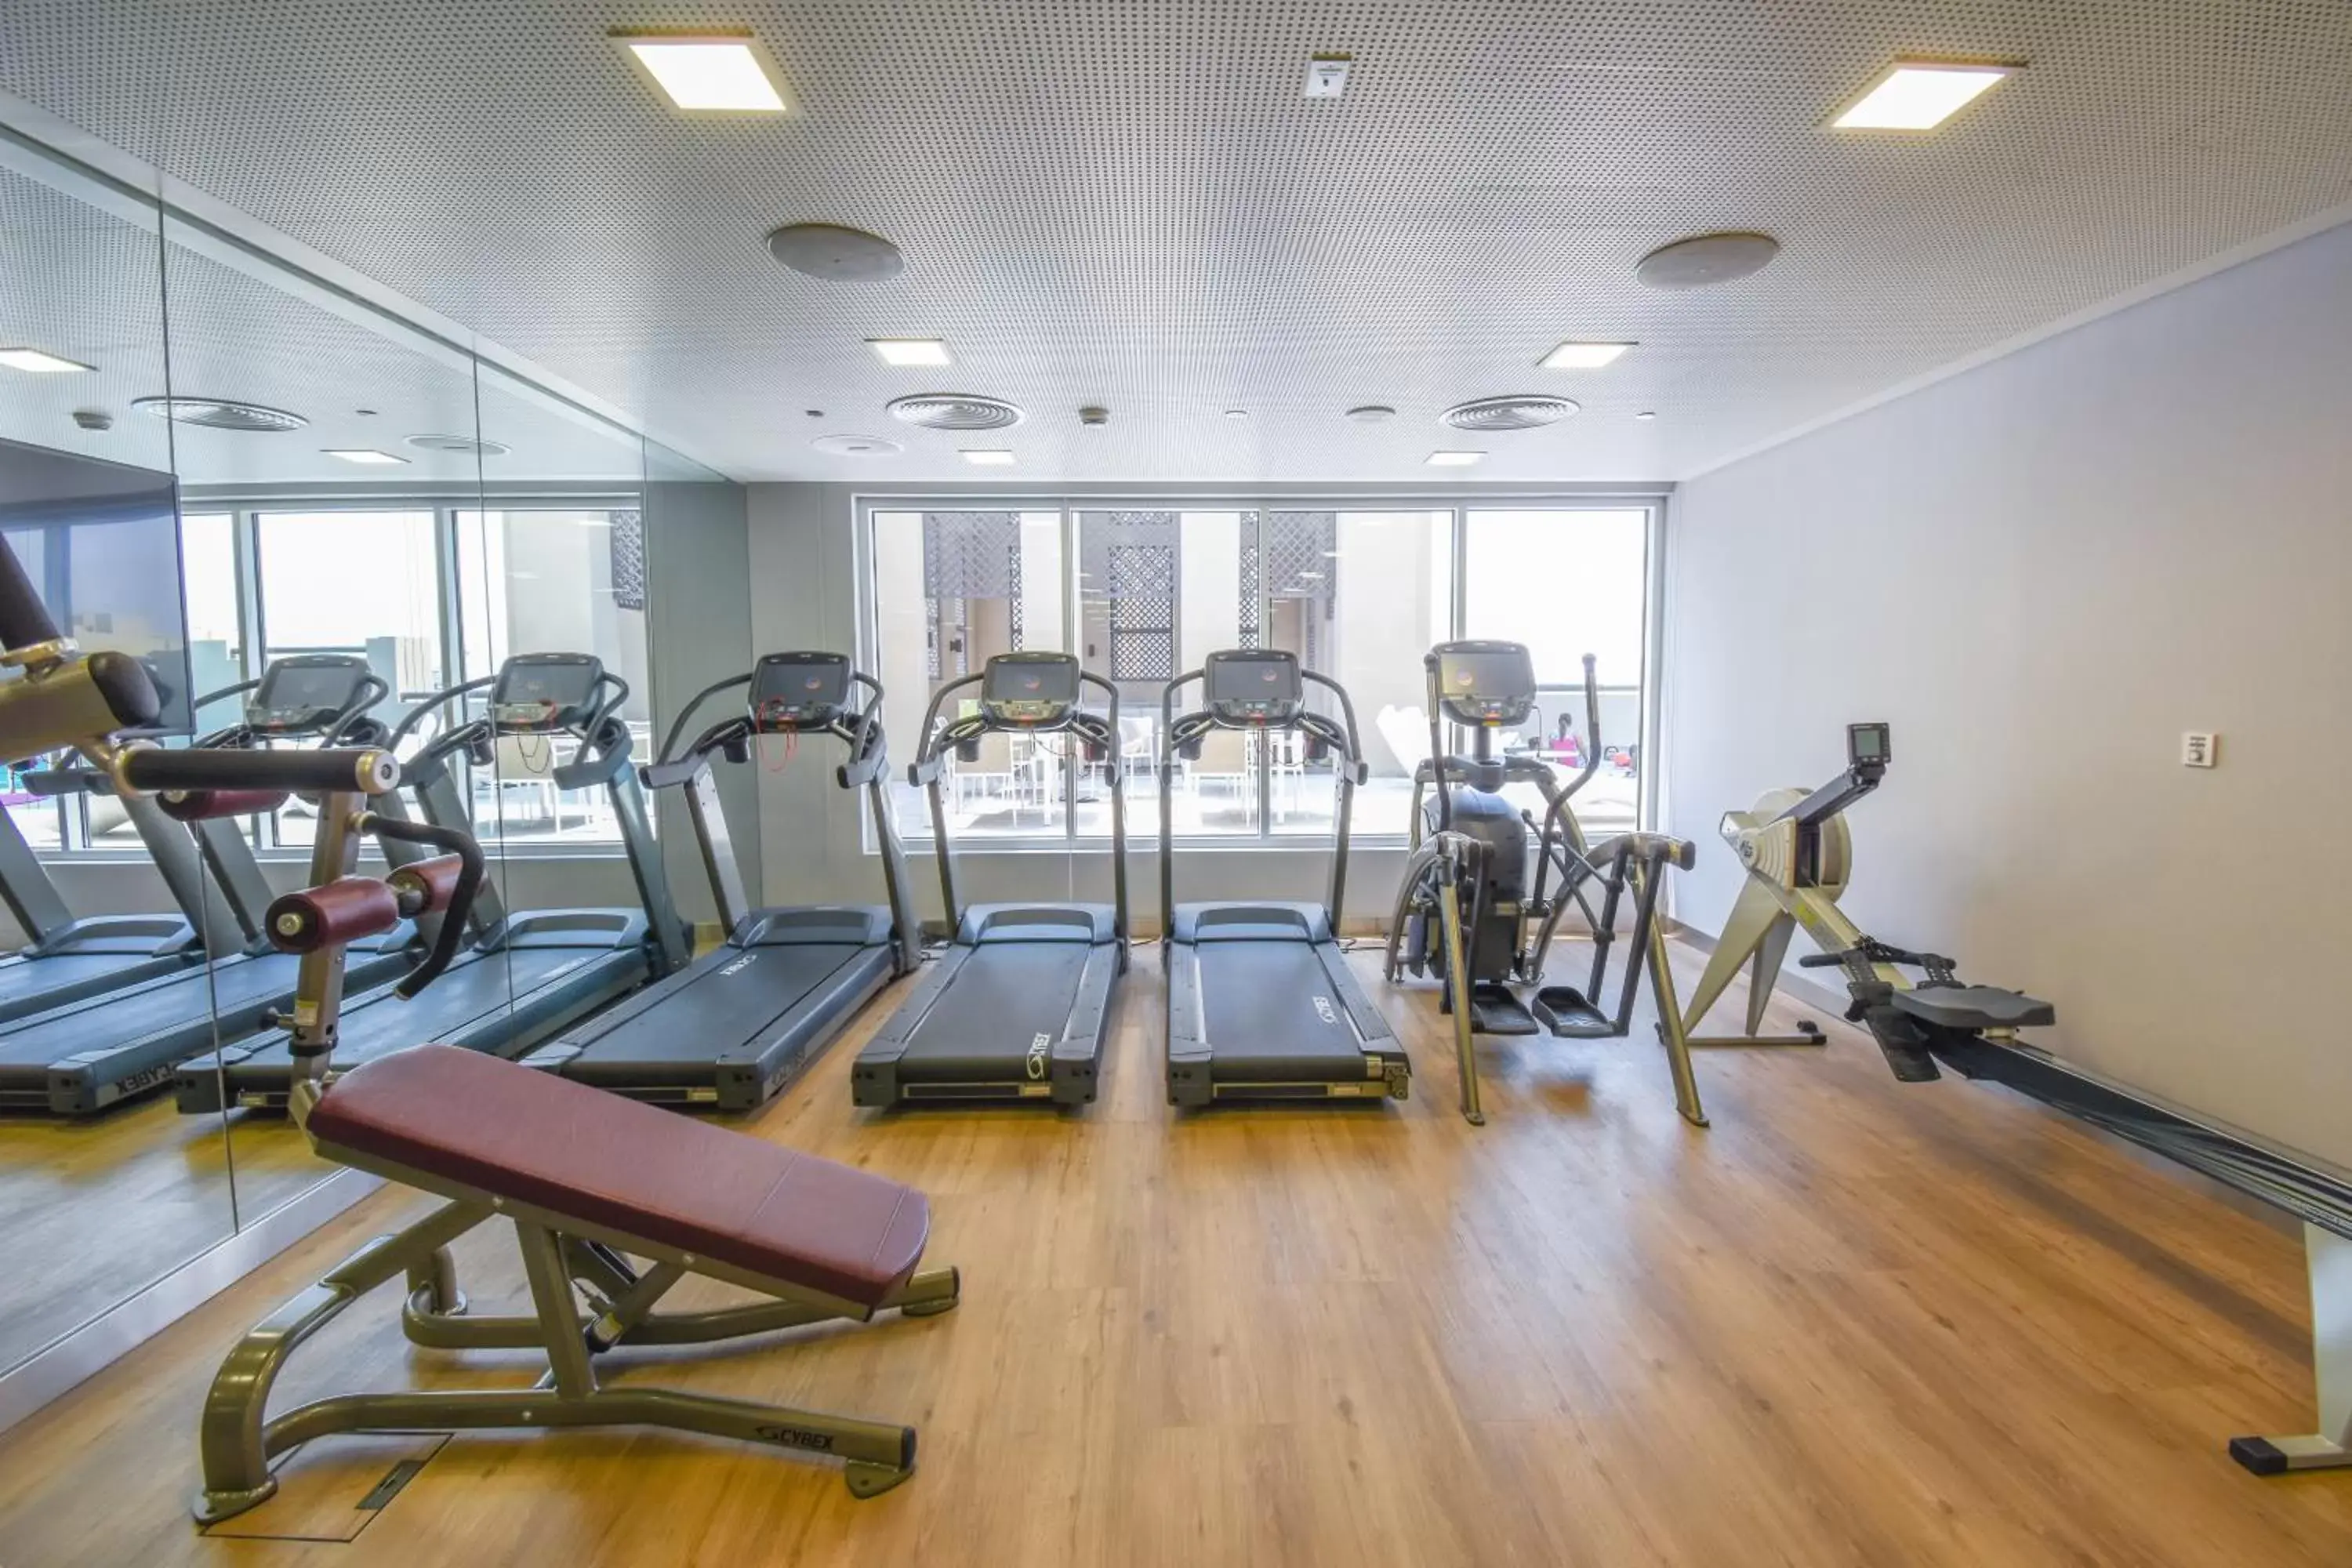 Fitness centre/facilities, Fitness Center/Facilities in Premier Inn Dubai Al Jaddaf